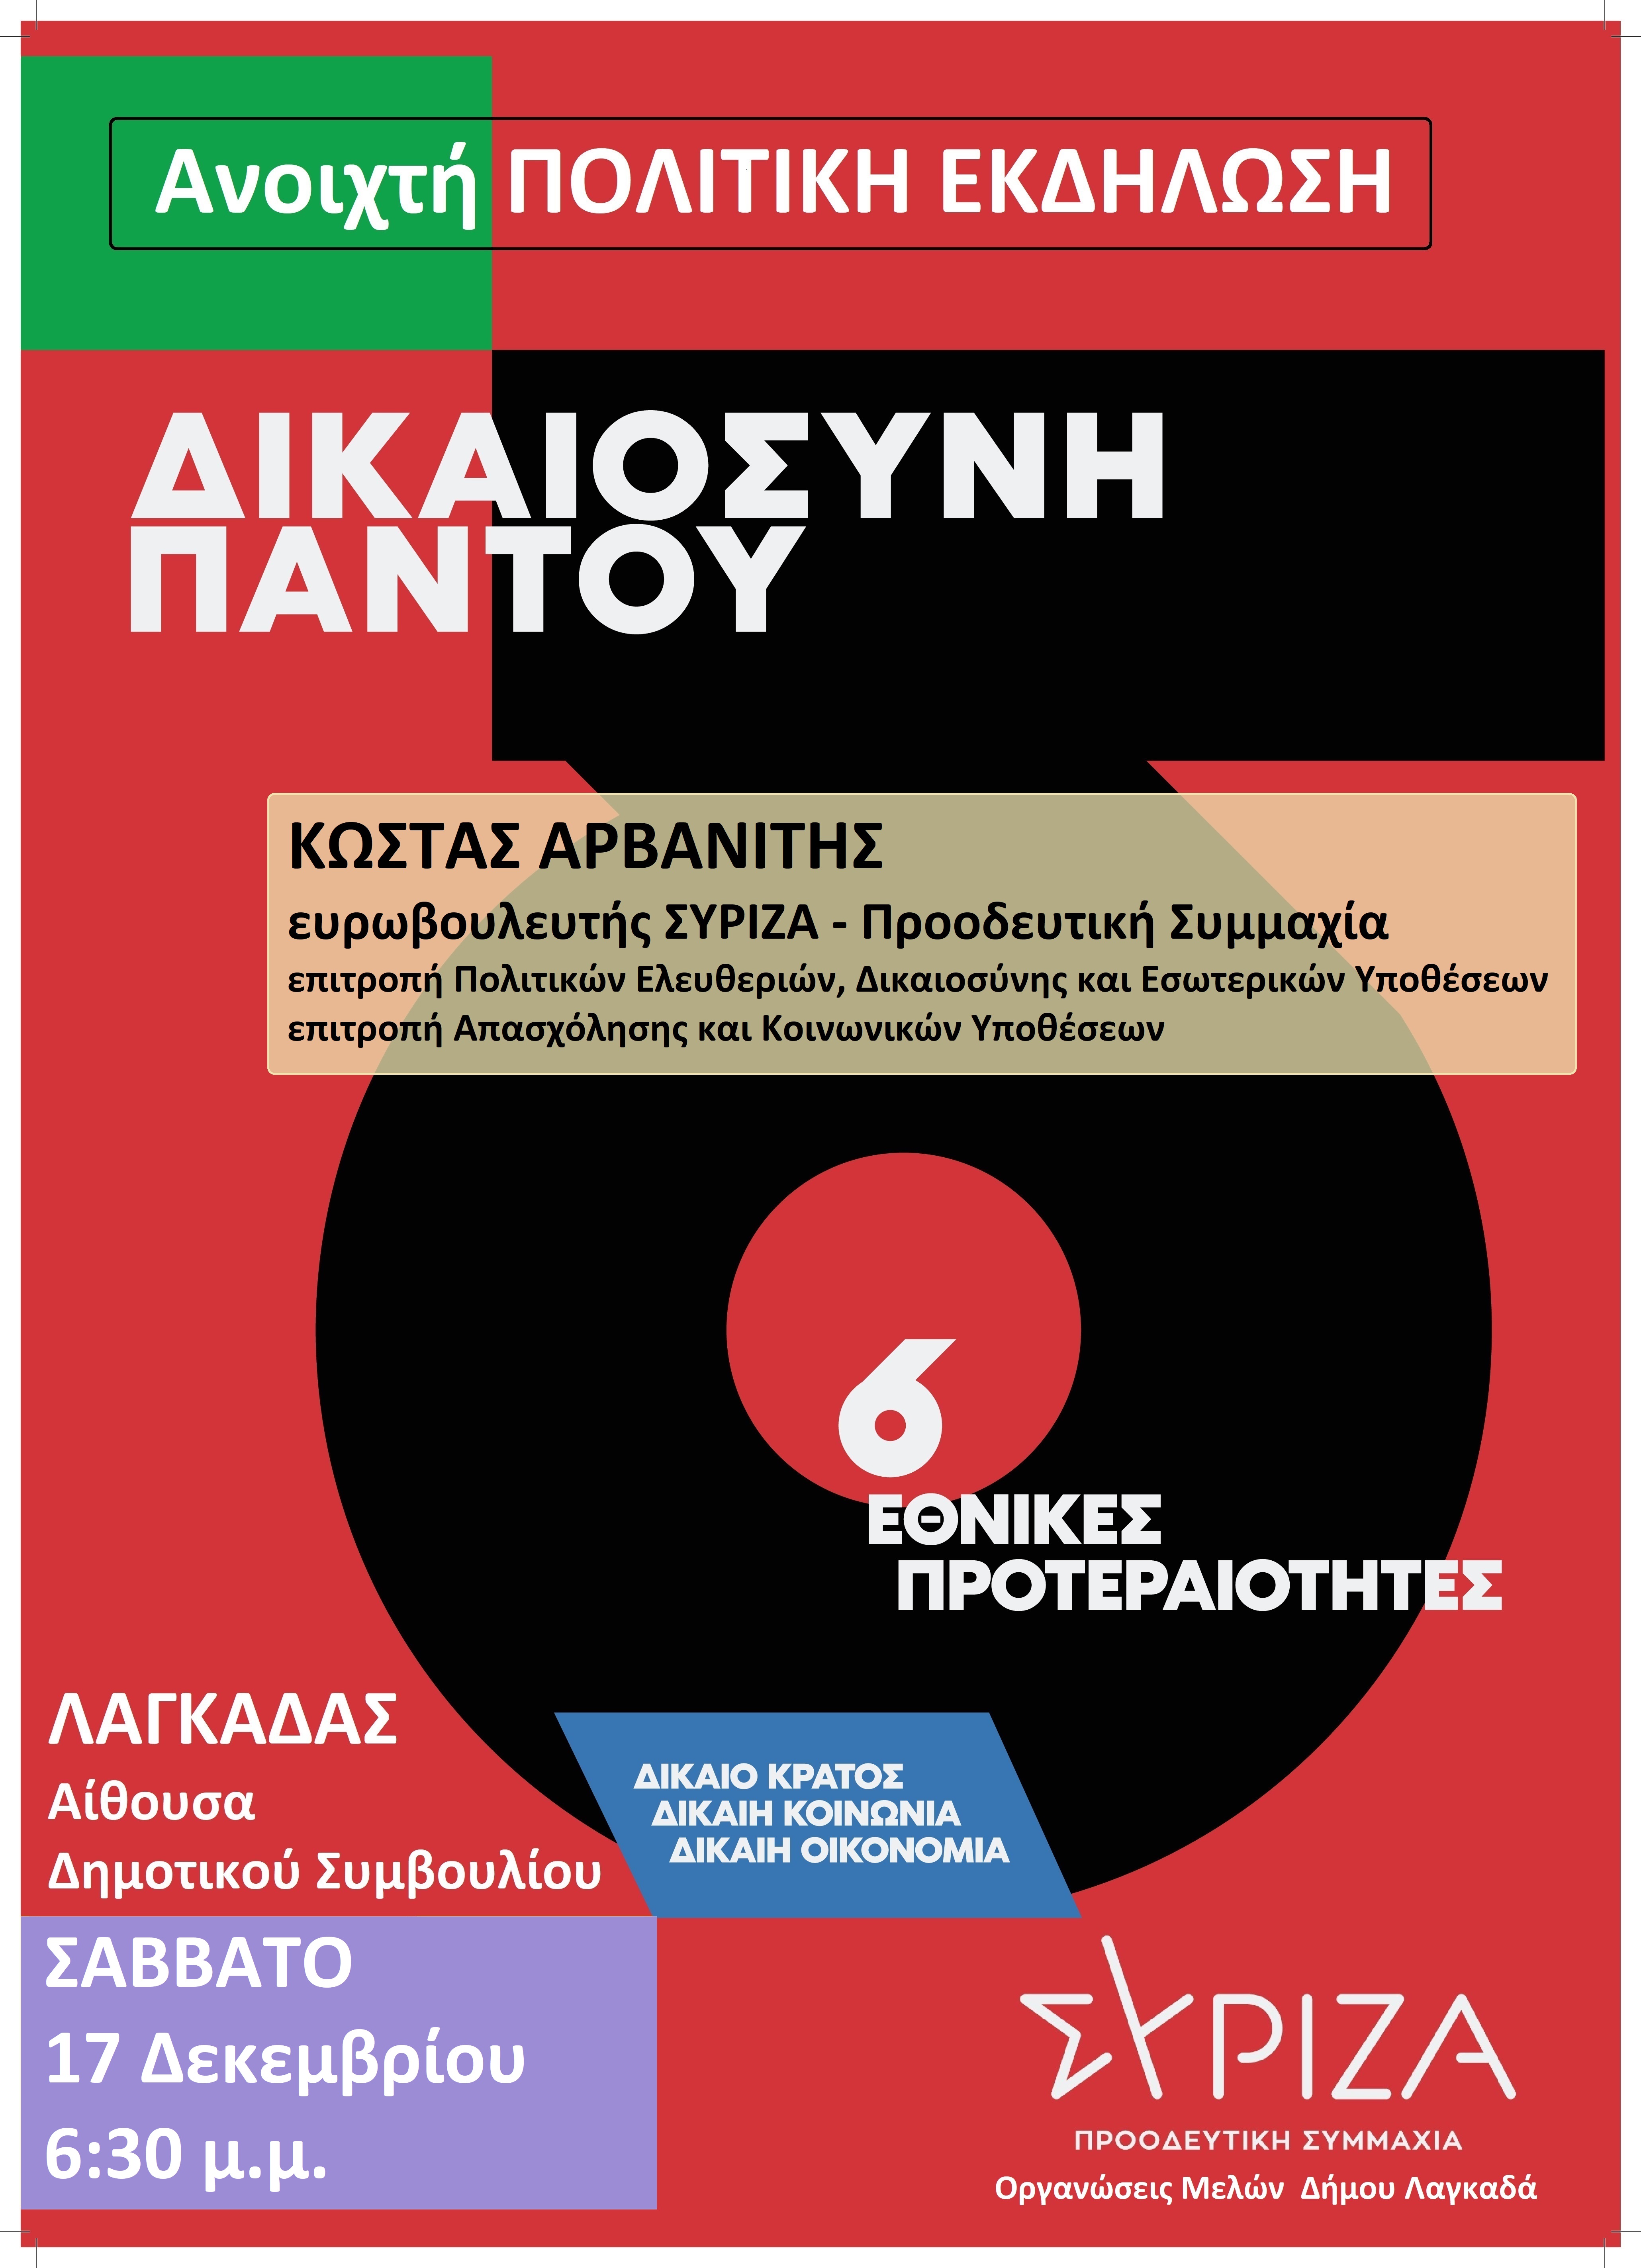 ΣΥΡΙΖΑ–ΠΣ Β Θεσσαλονίκης​: Ανοιχτή πολιτική εκδήλωση - Δικαιοσύνη παντού